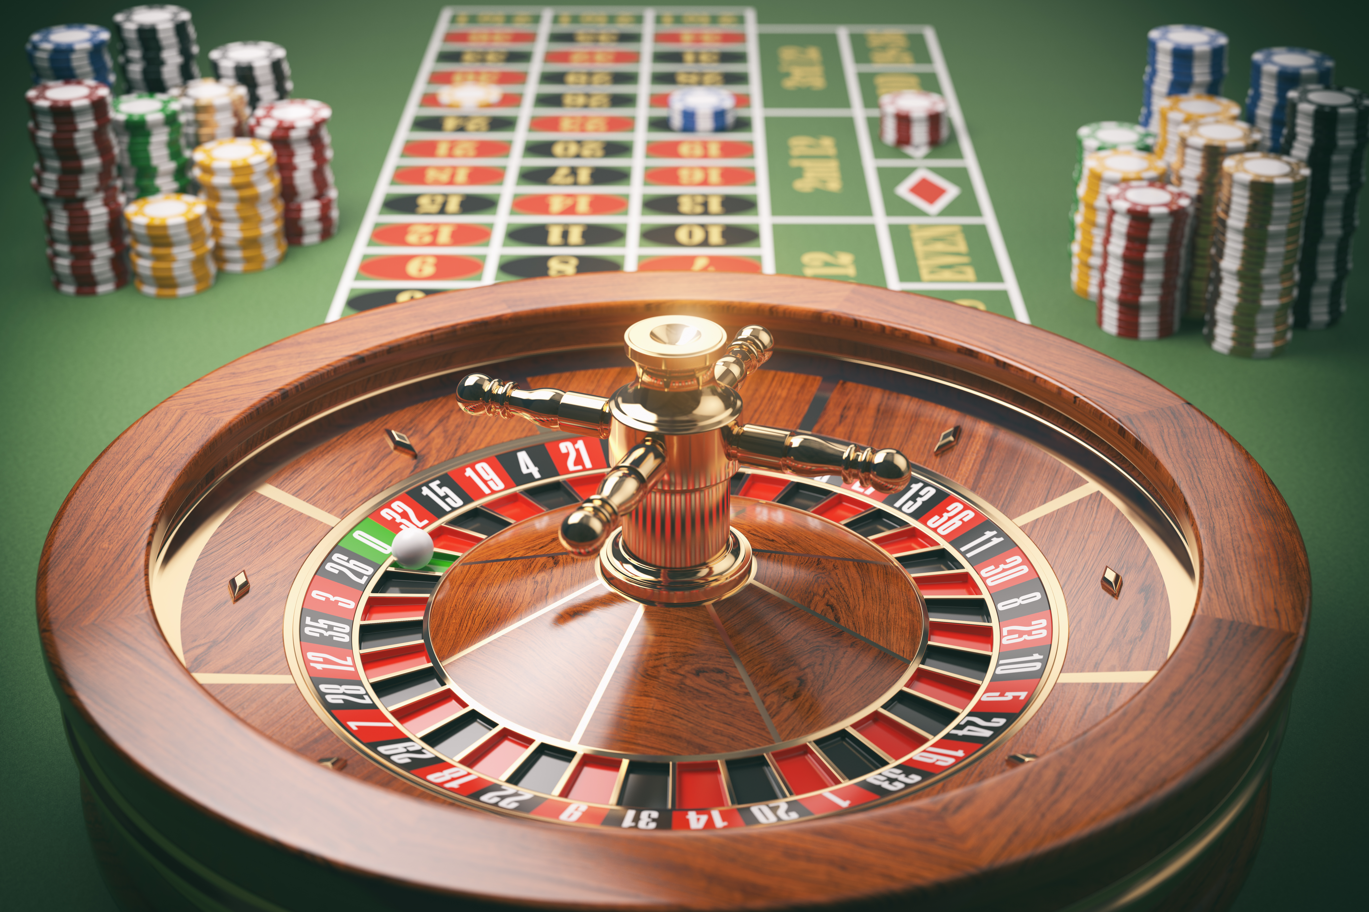 Der ganzheitliche Ansatz für Seriöse Online Casinos